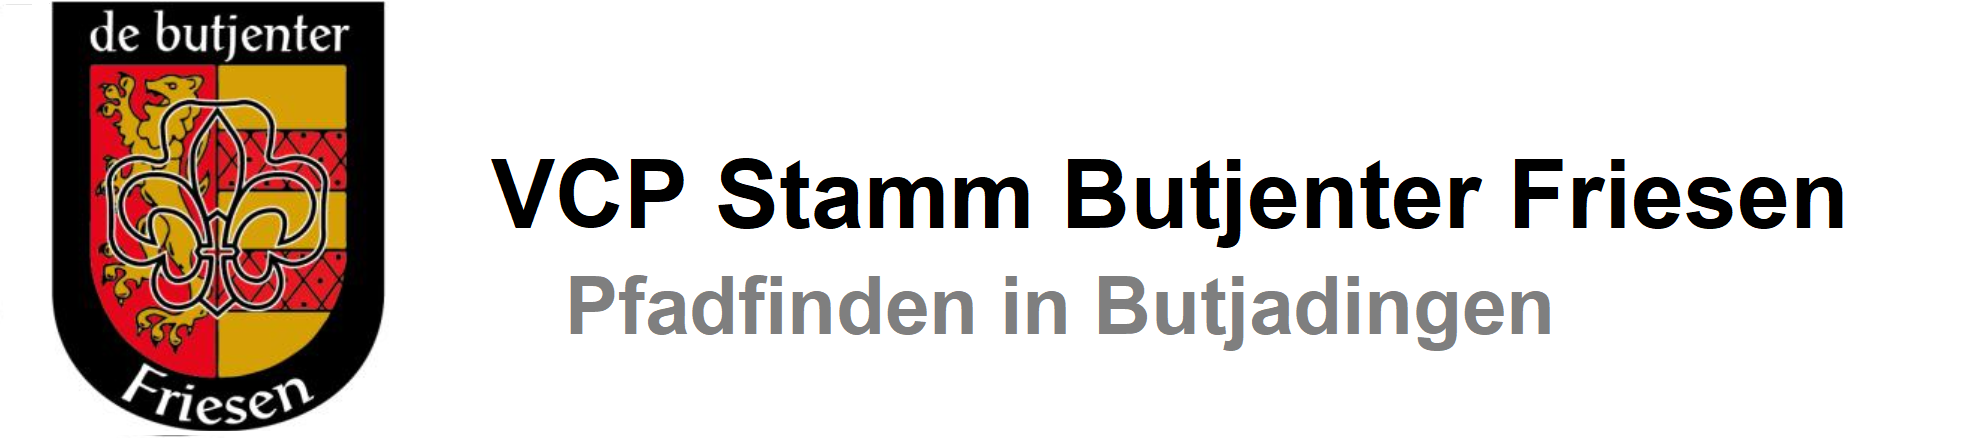 VCP Stamm Butjenter Friesen